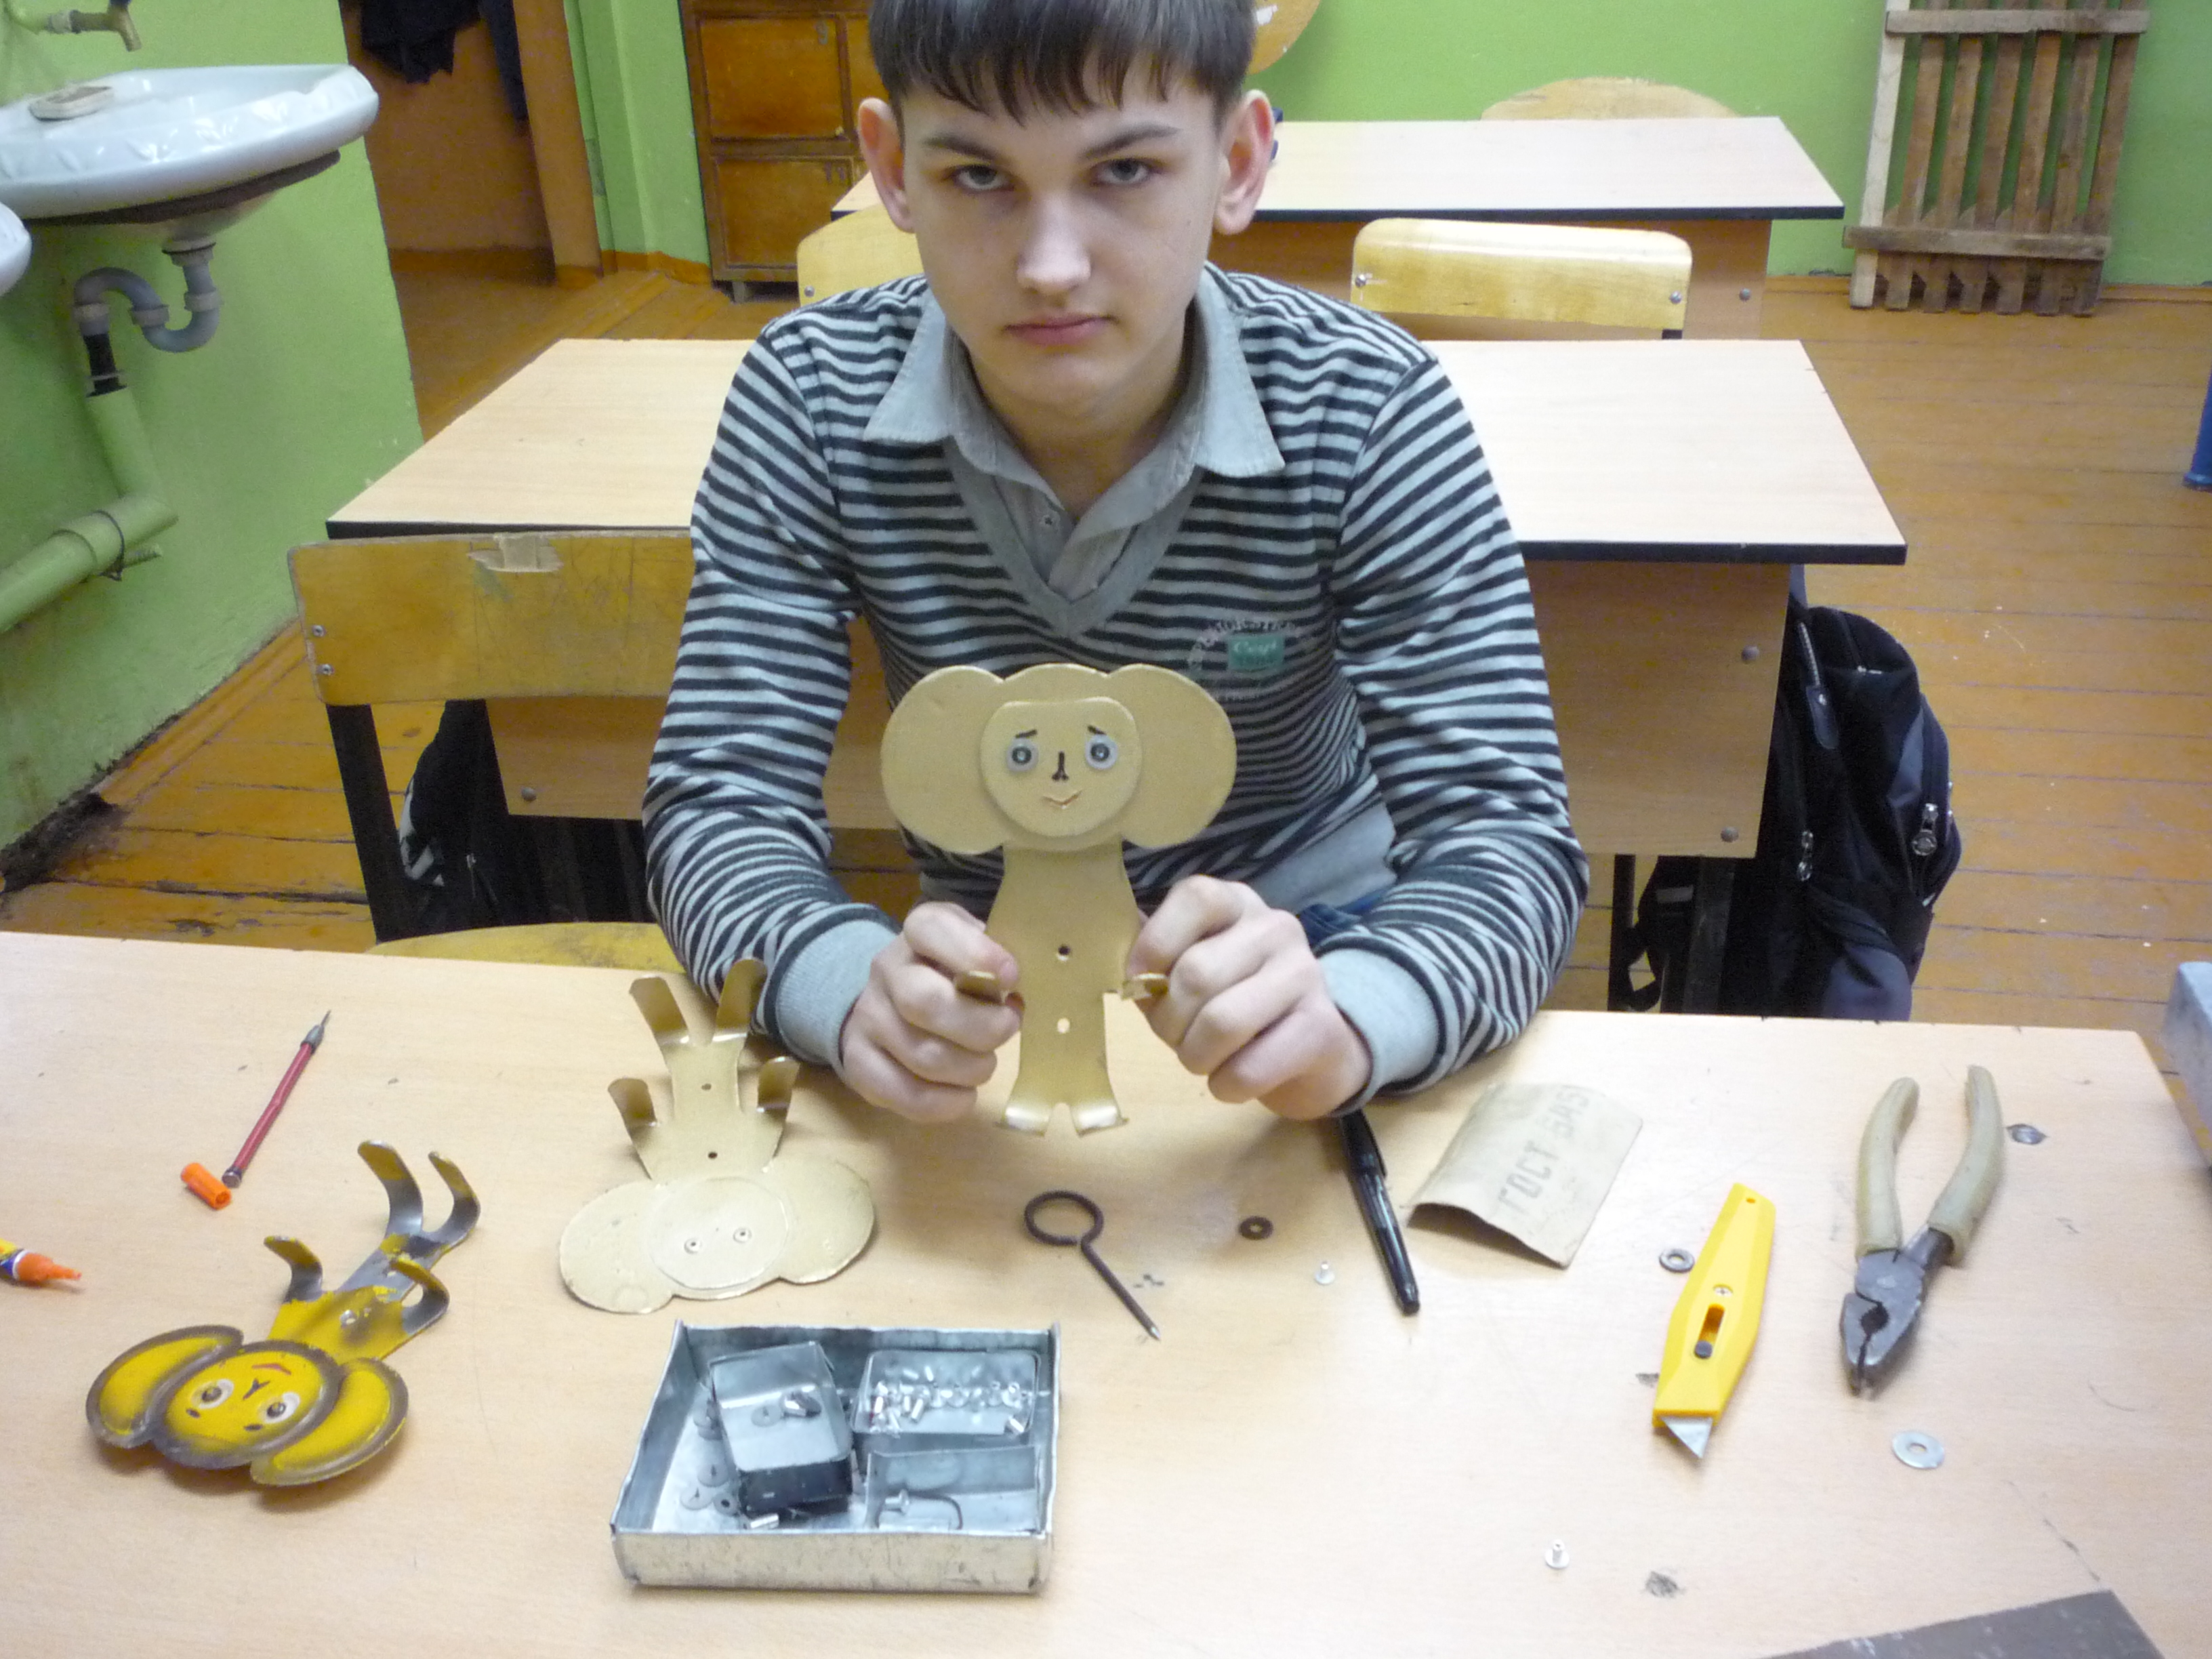 Творческая работа учащихся 7 класса Изготовление металлической вешалки - игрушки